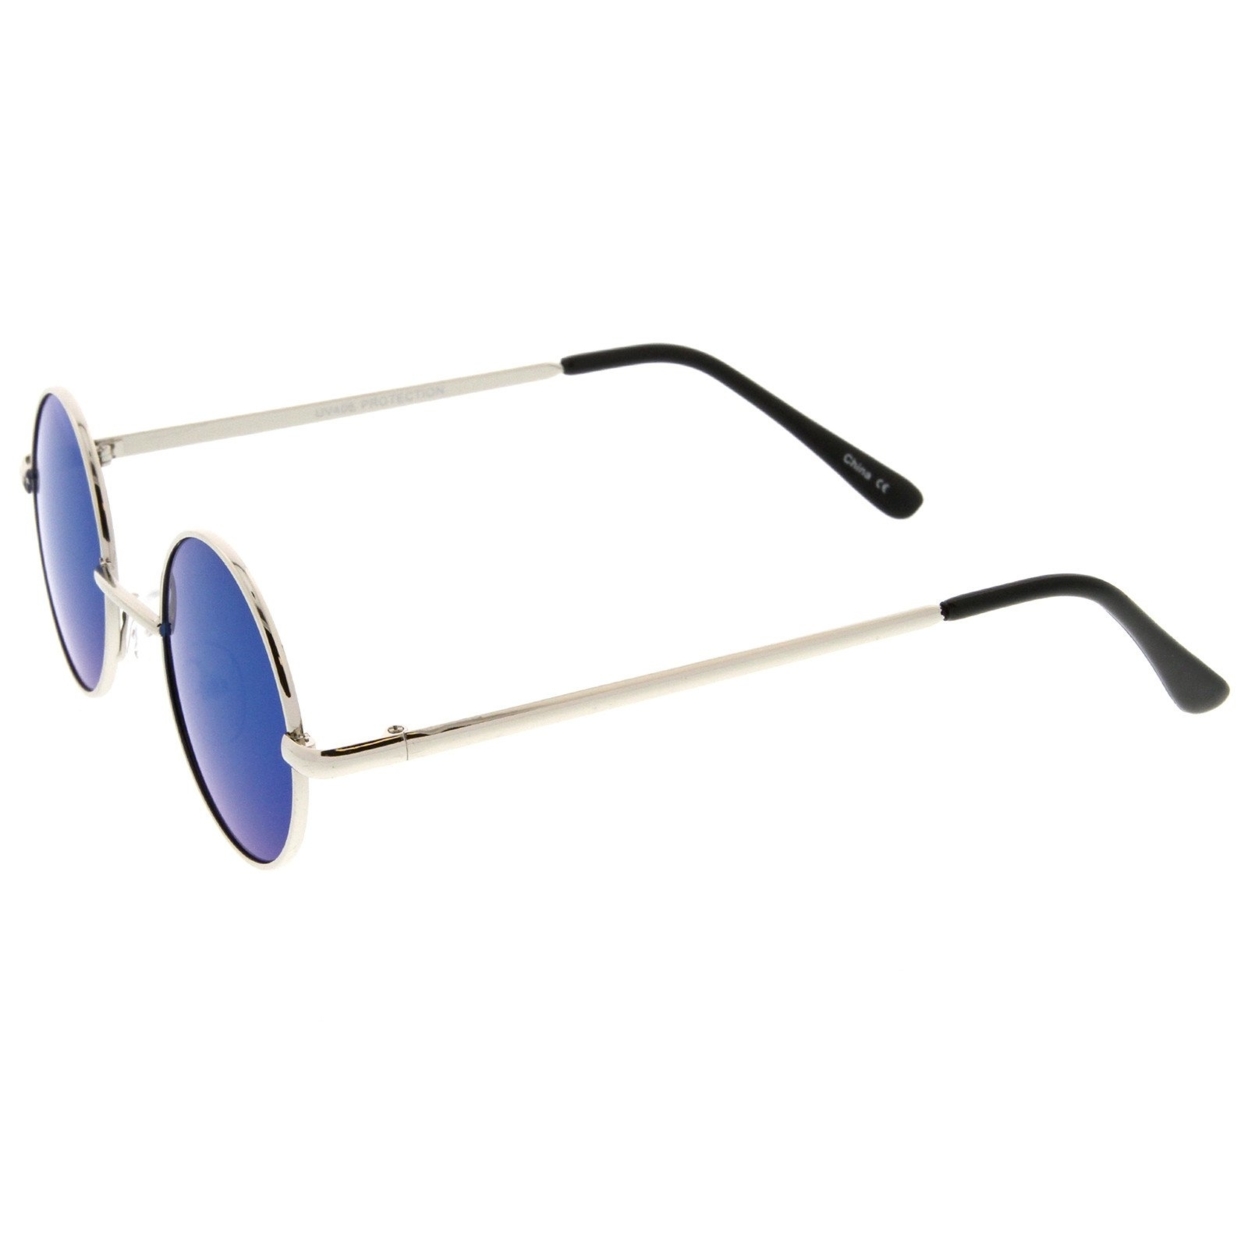 Small Retro Lennon Style Colored Mirror Lens Round Metal Sunglasses 41mm - Silver / Magenta-Orange Mirror